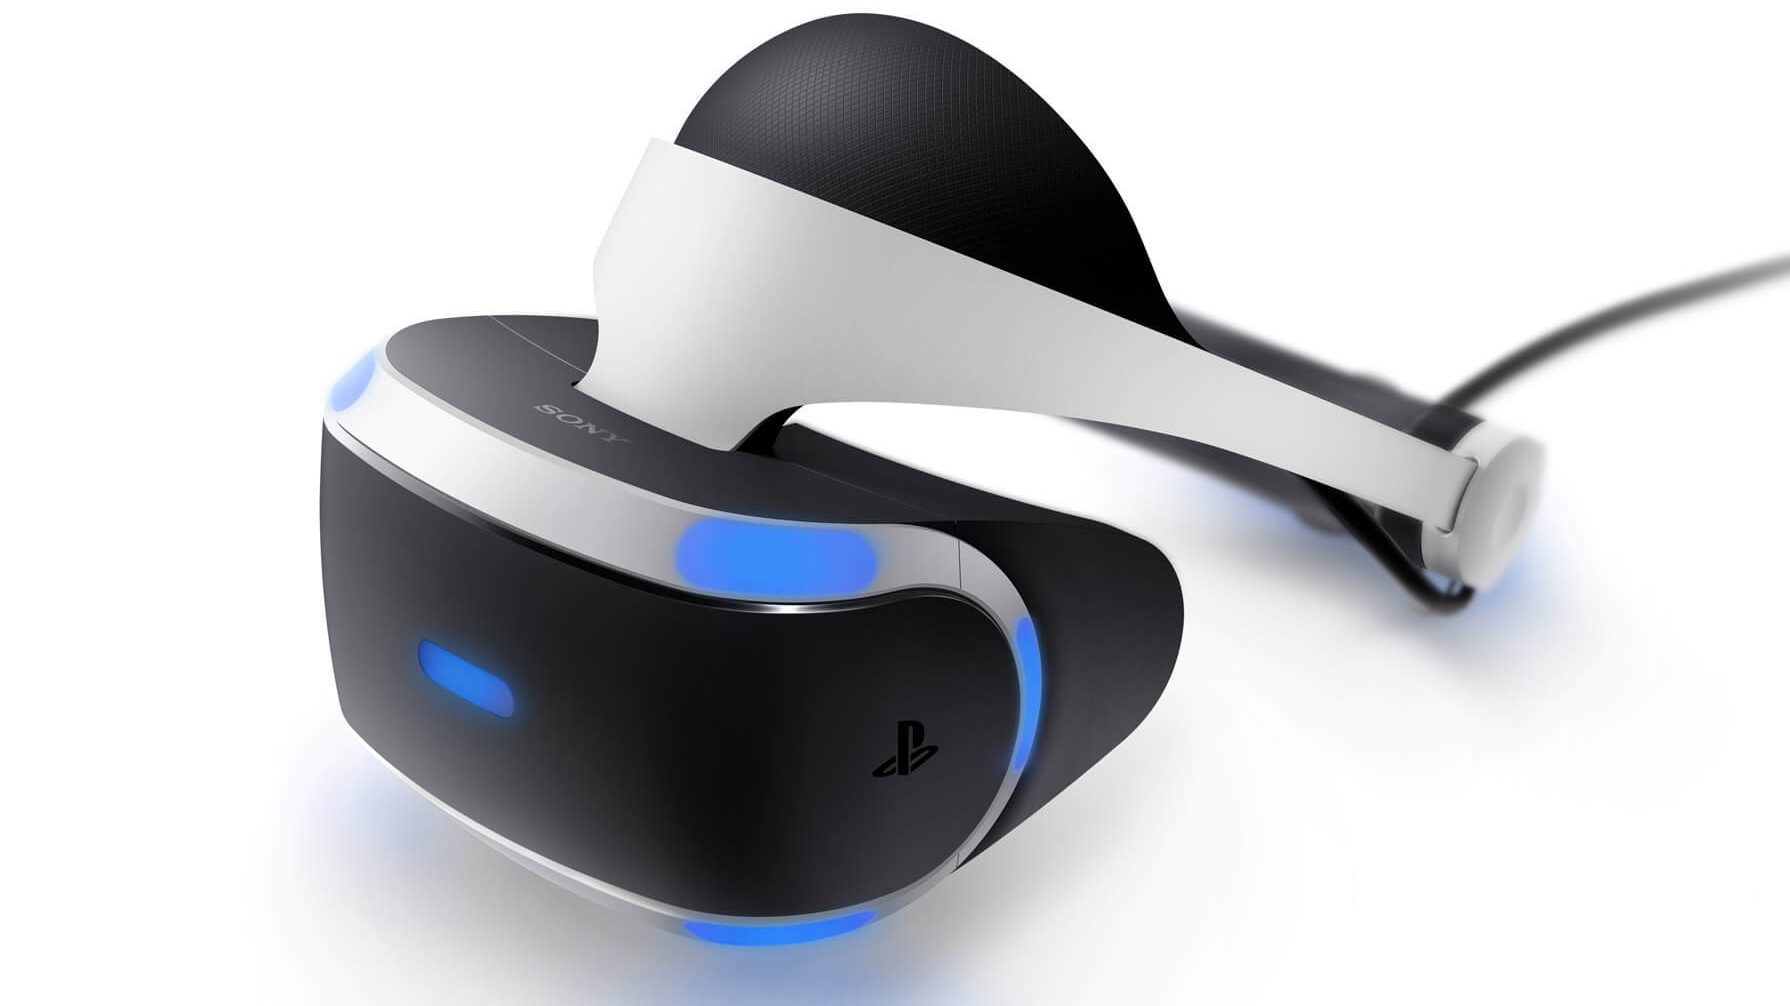 Half-Life: Alyx still not announced for Playstation VR 2